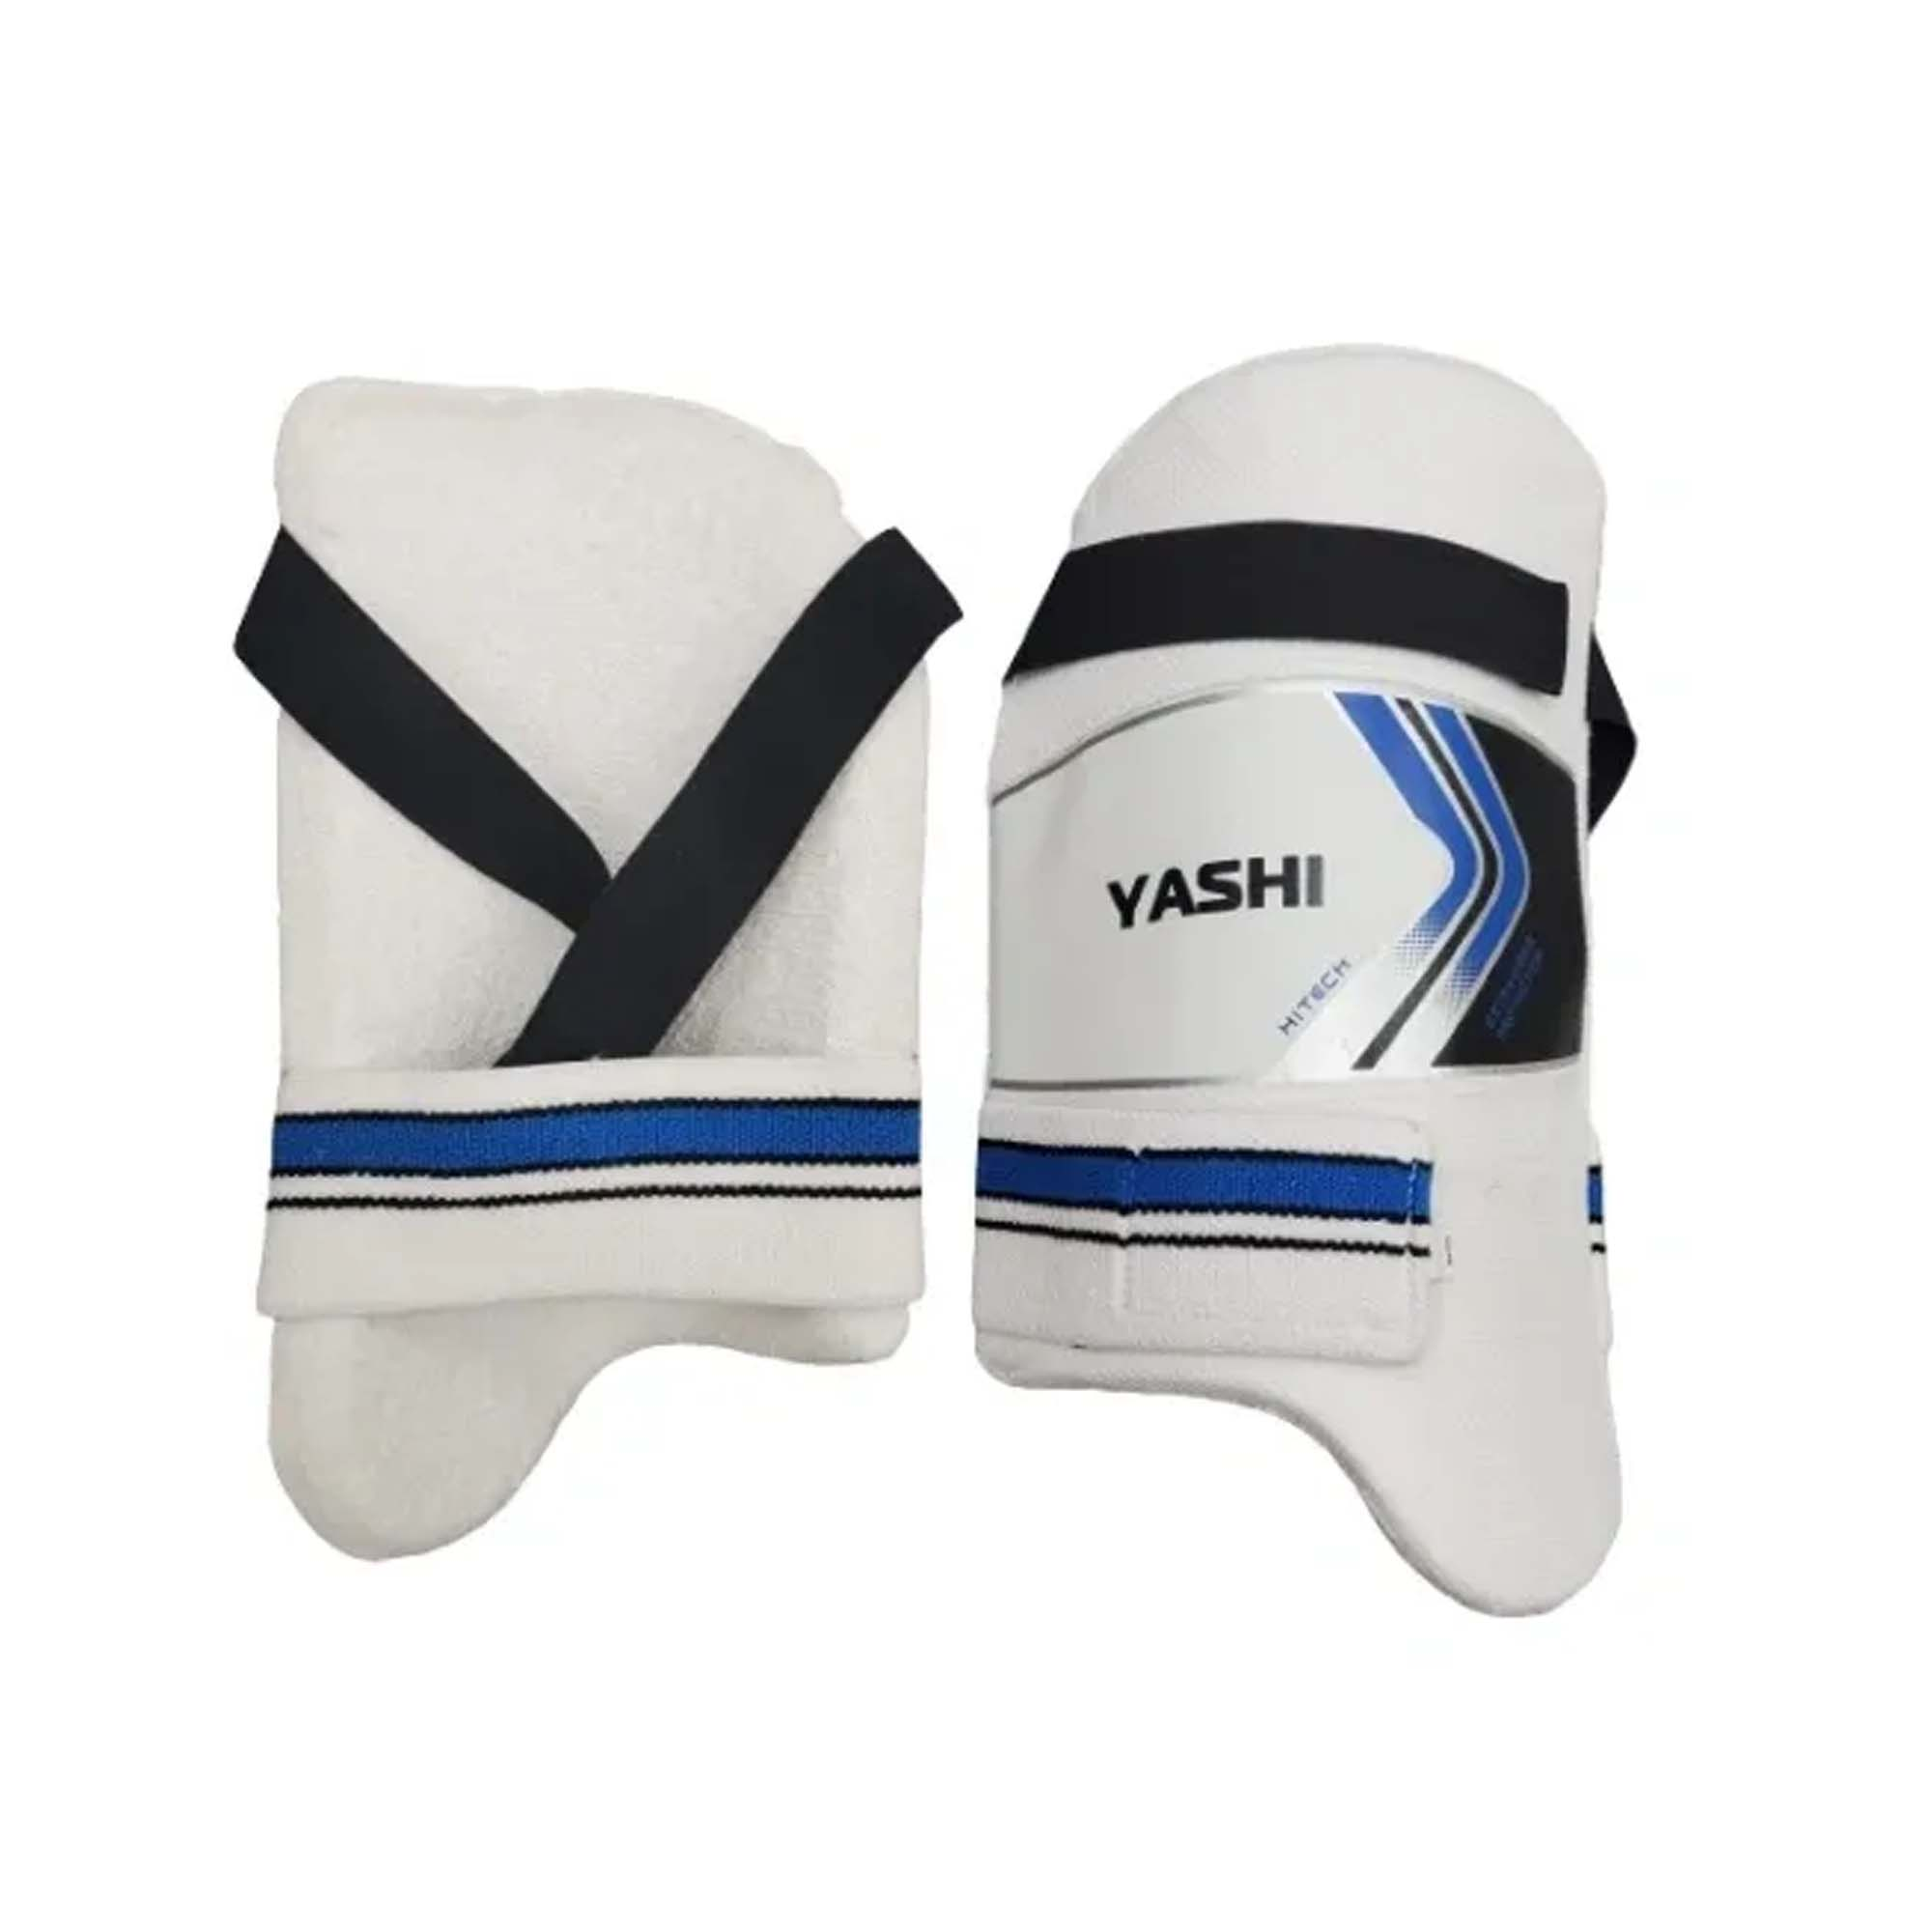 YASHI Hi-Tech Thigh Guard